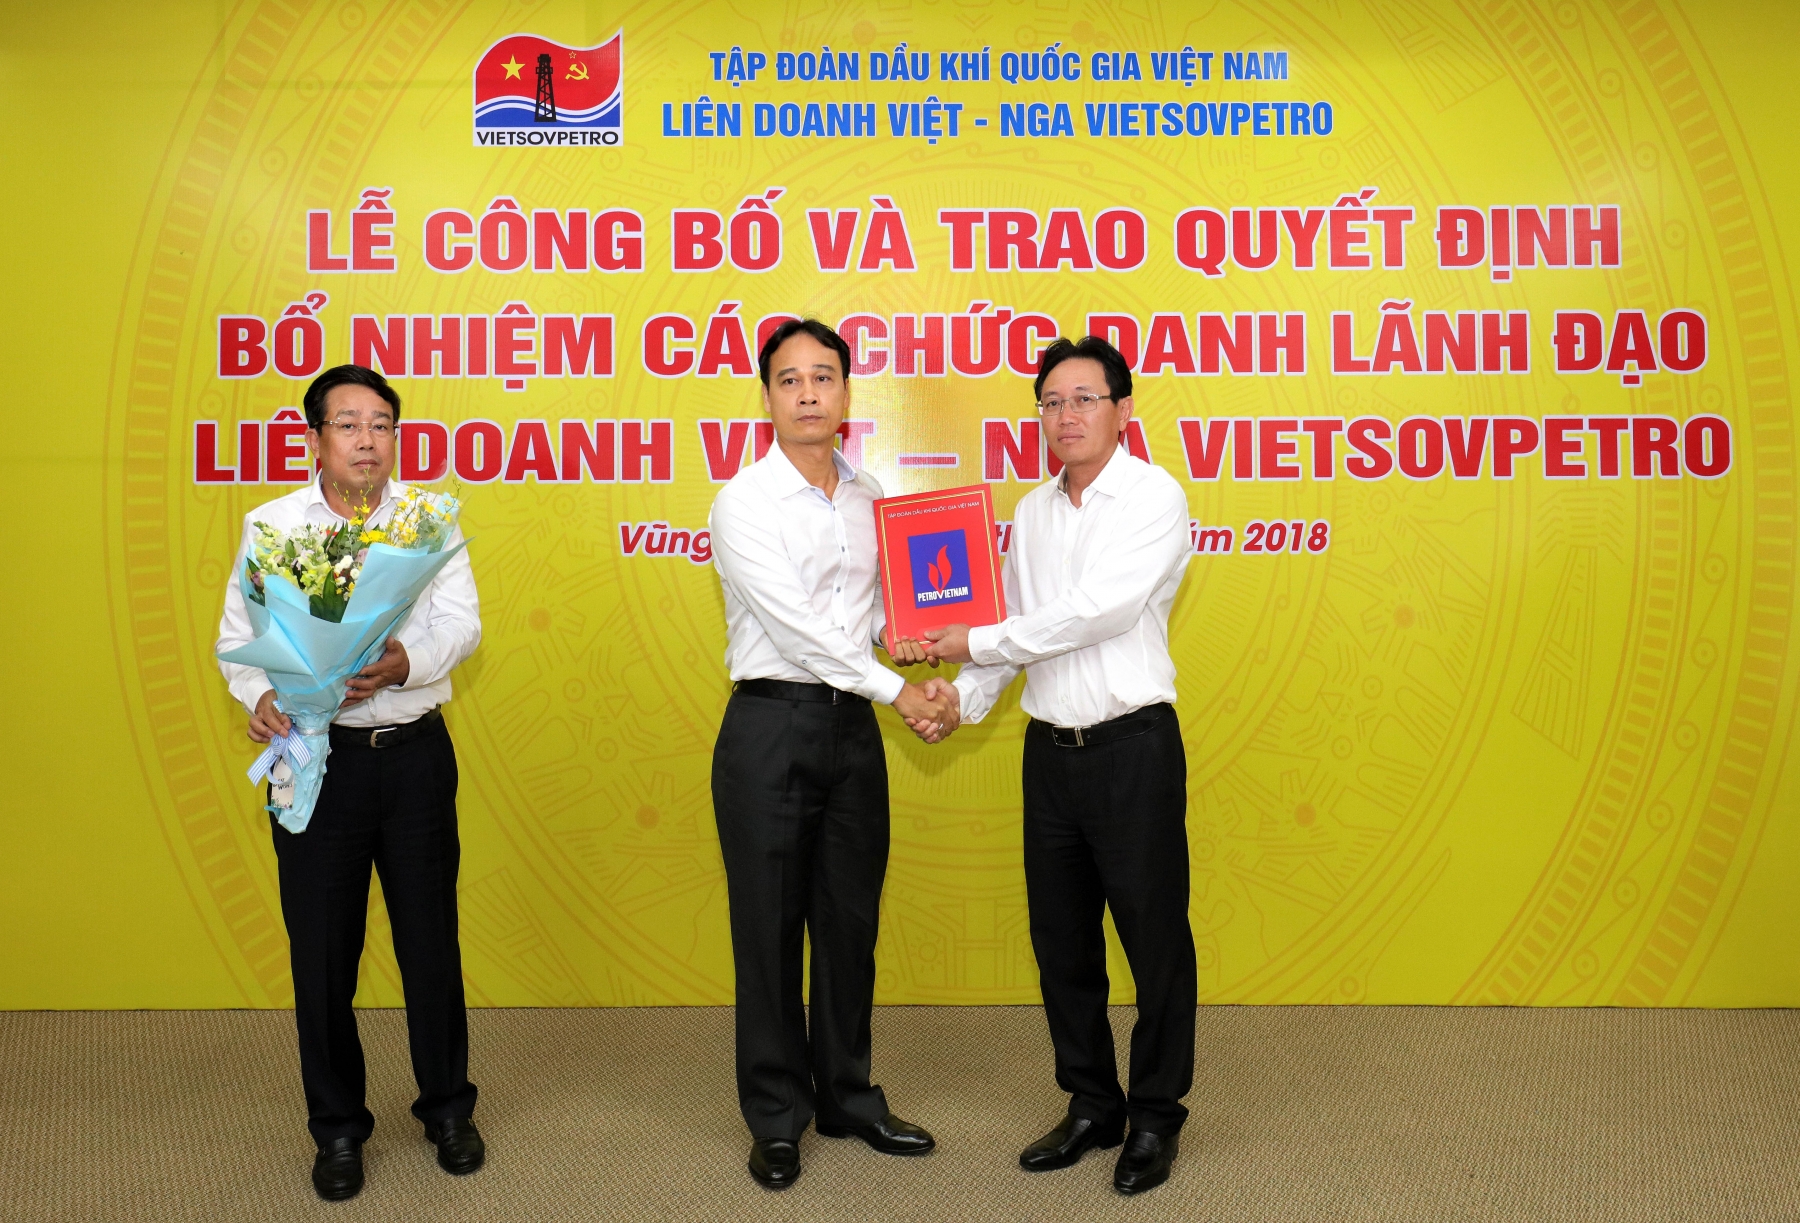 Công bố quyết định bổ nhiệm các chức danh lãnh đạo Liên doanh Việt – Nga Vietsovpetro